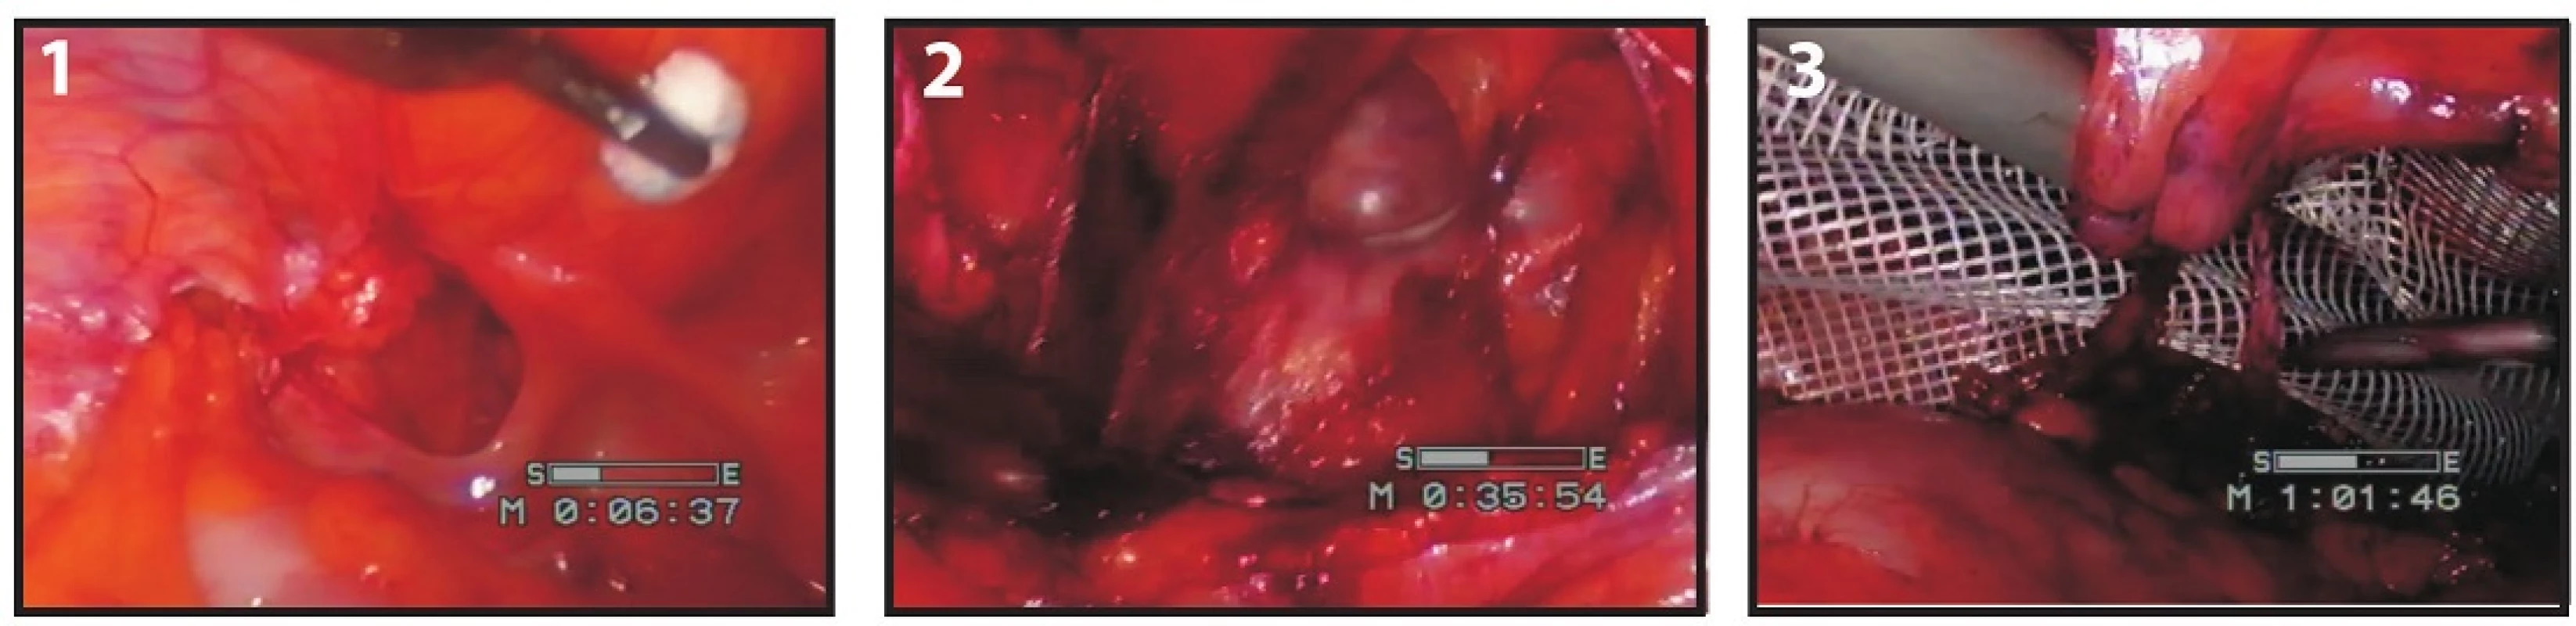 Operace supravezikální kýly – pacient 2
Fig. 2: Hernia supravesicalis surgery – patient 2